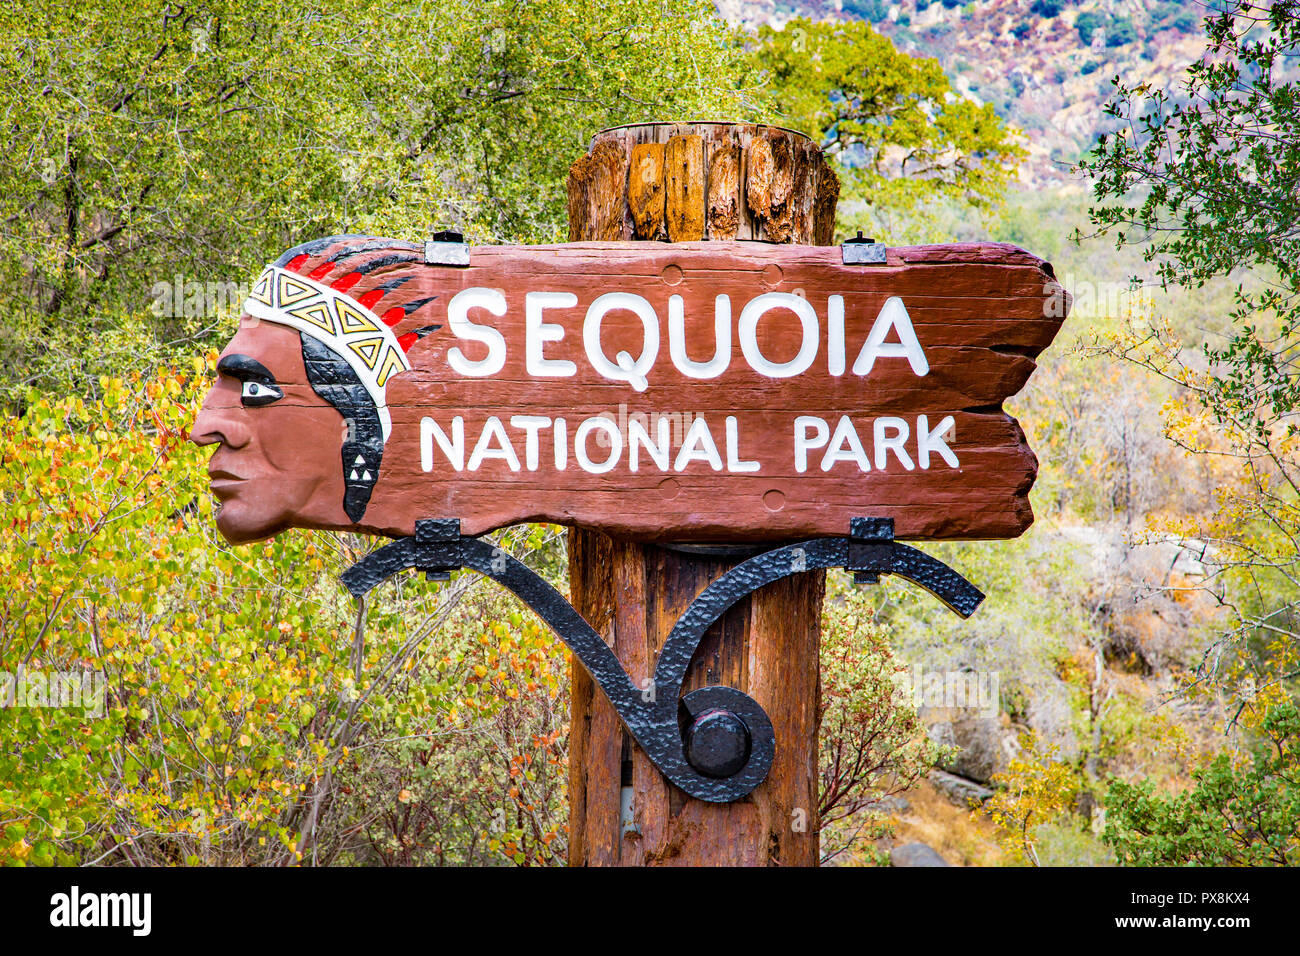 Klassische Ansicht der traditionellen hölzernen Sequoia National Park Eingang denkmal Willkommen Anmelden Sommer, Kalifornien, USA Stockfoto